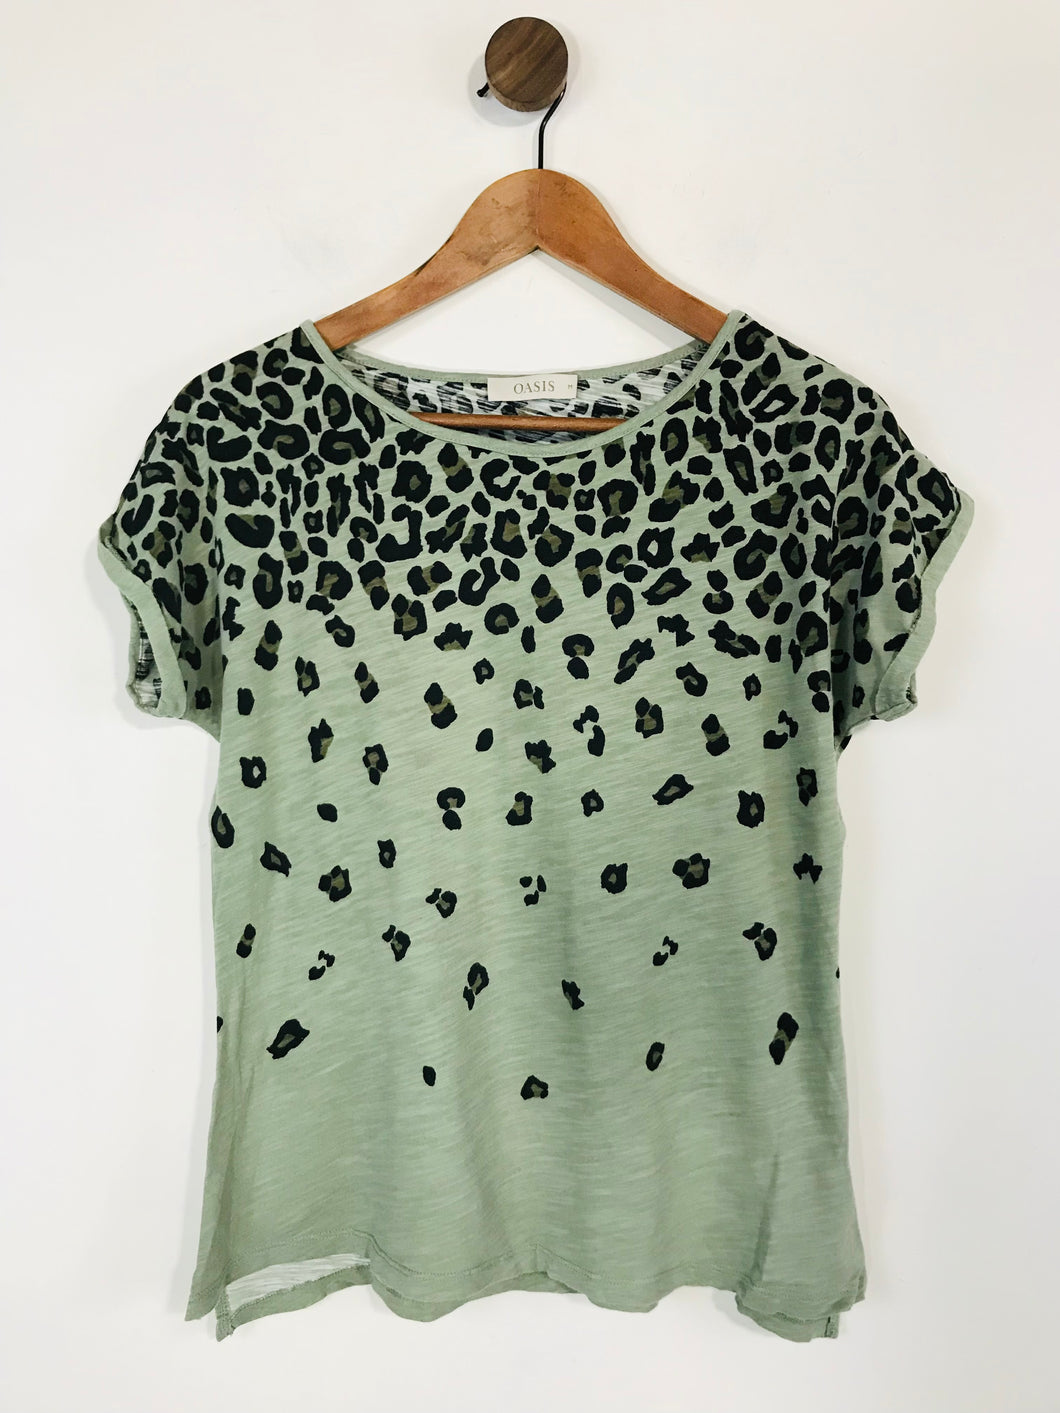 Oasis Women's Leopard Print T-Shirt  | M UK10-12 | Green